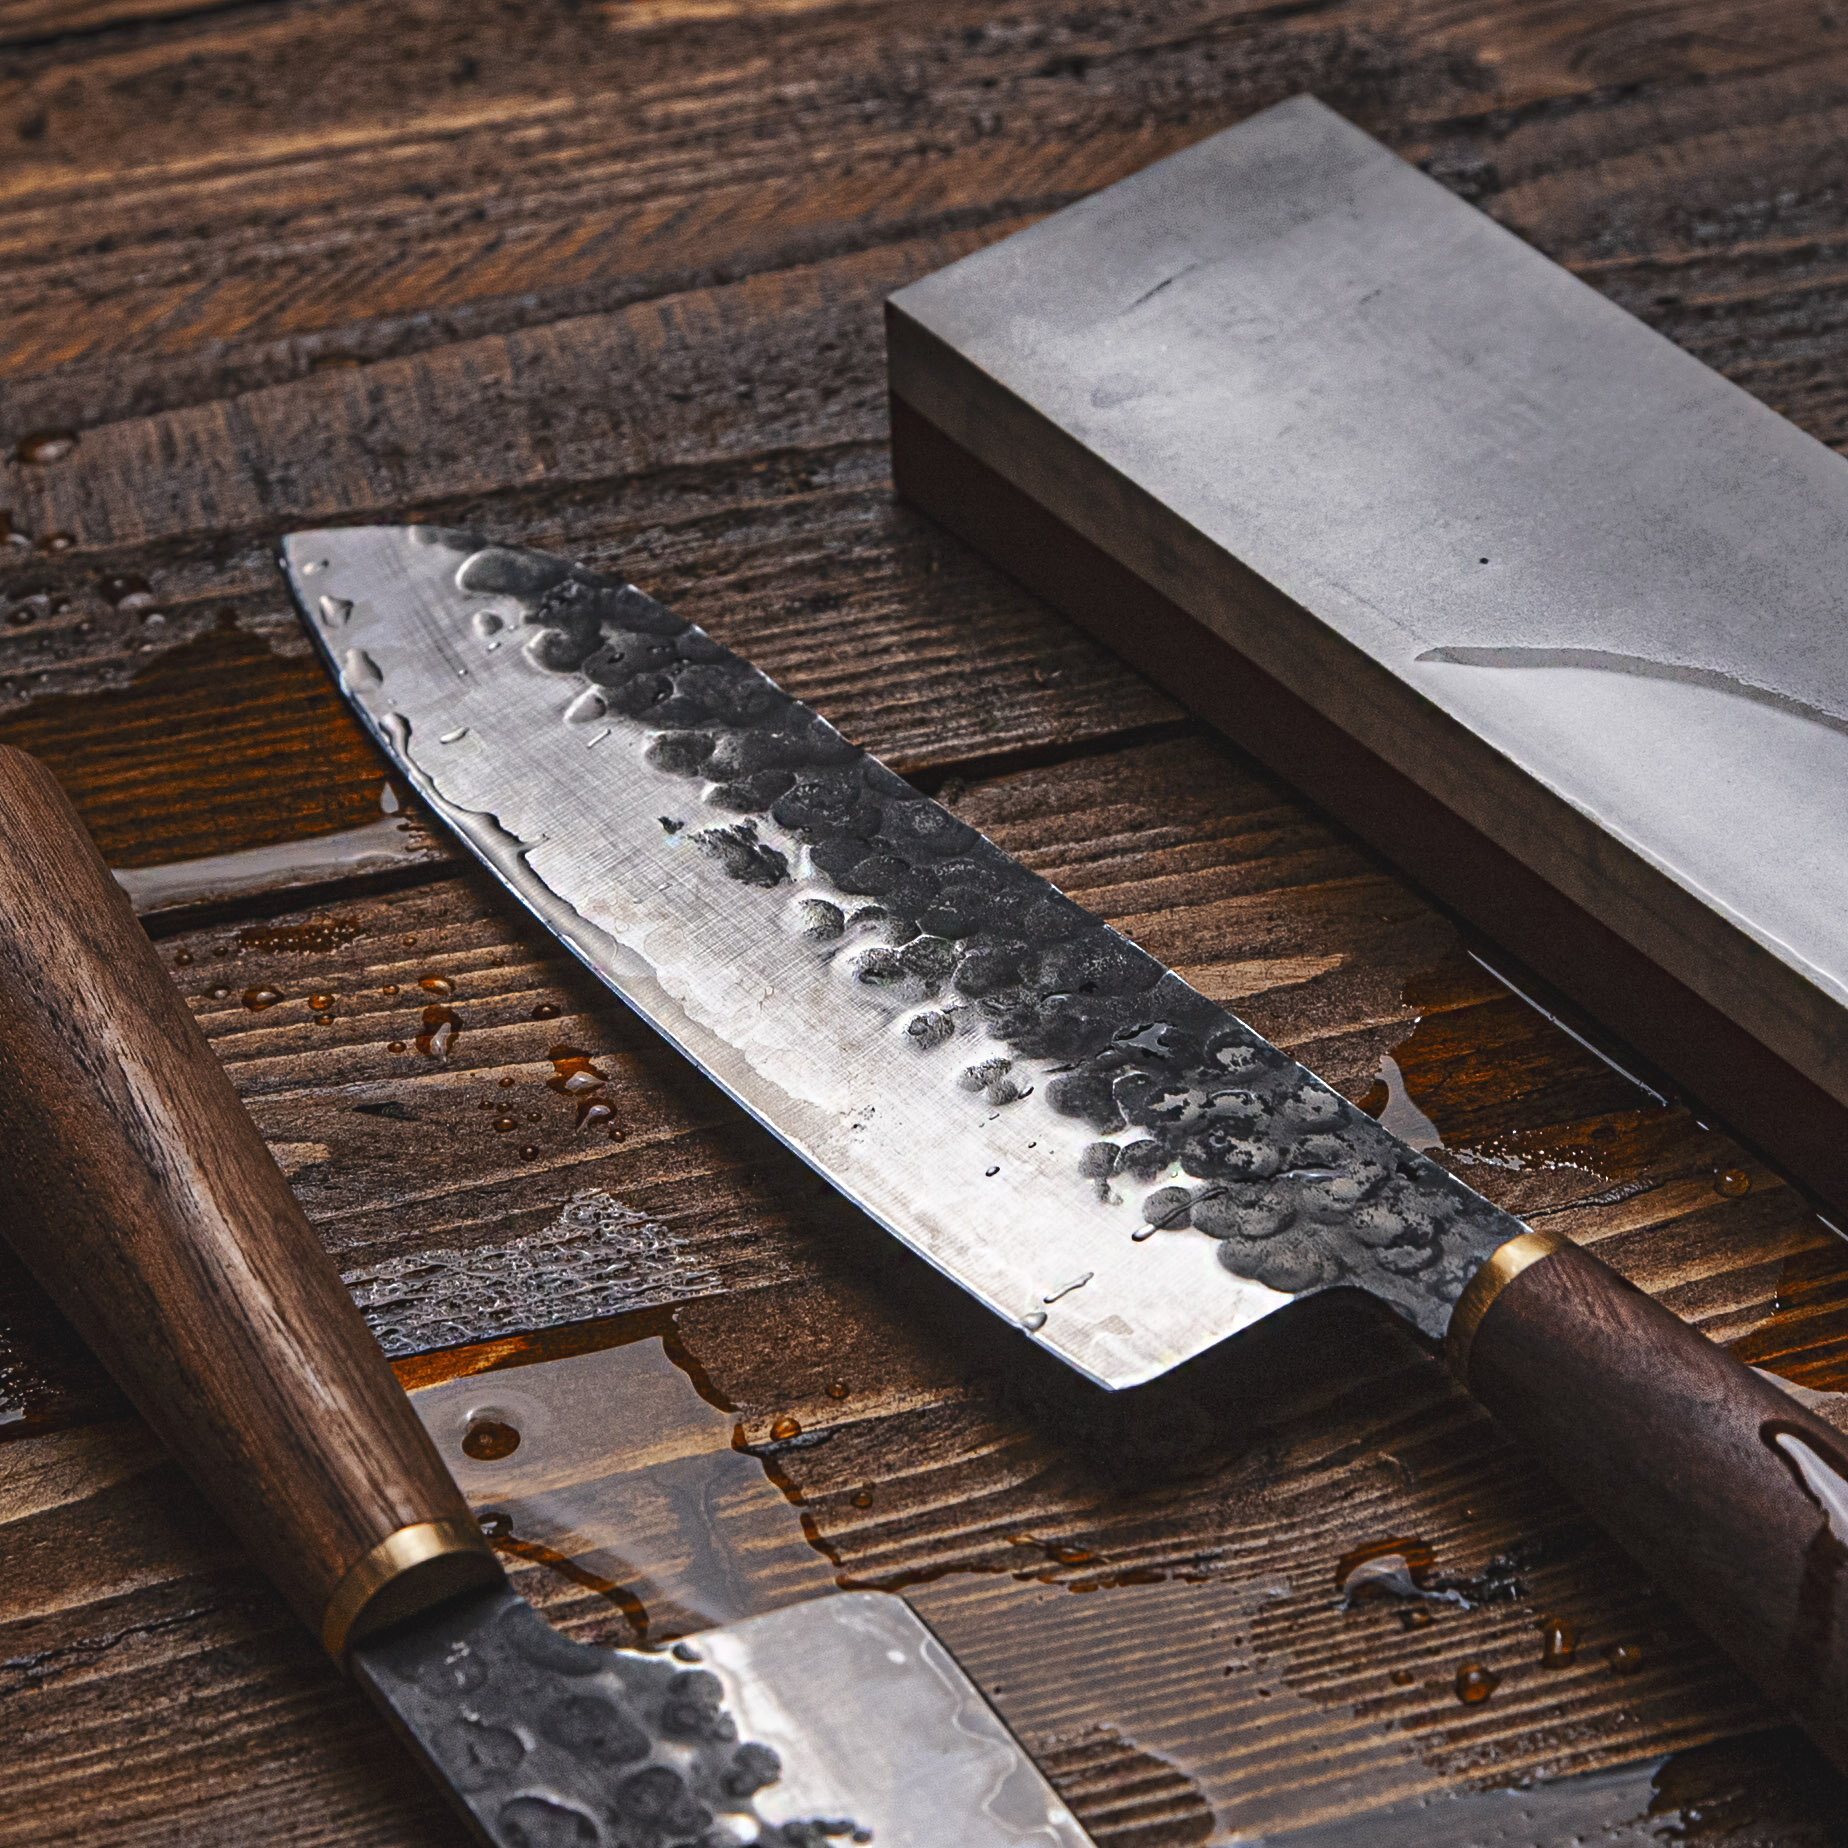 katto-knives-henry-santoku-sharpening.jpg